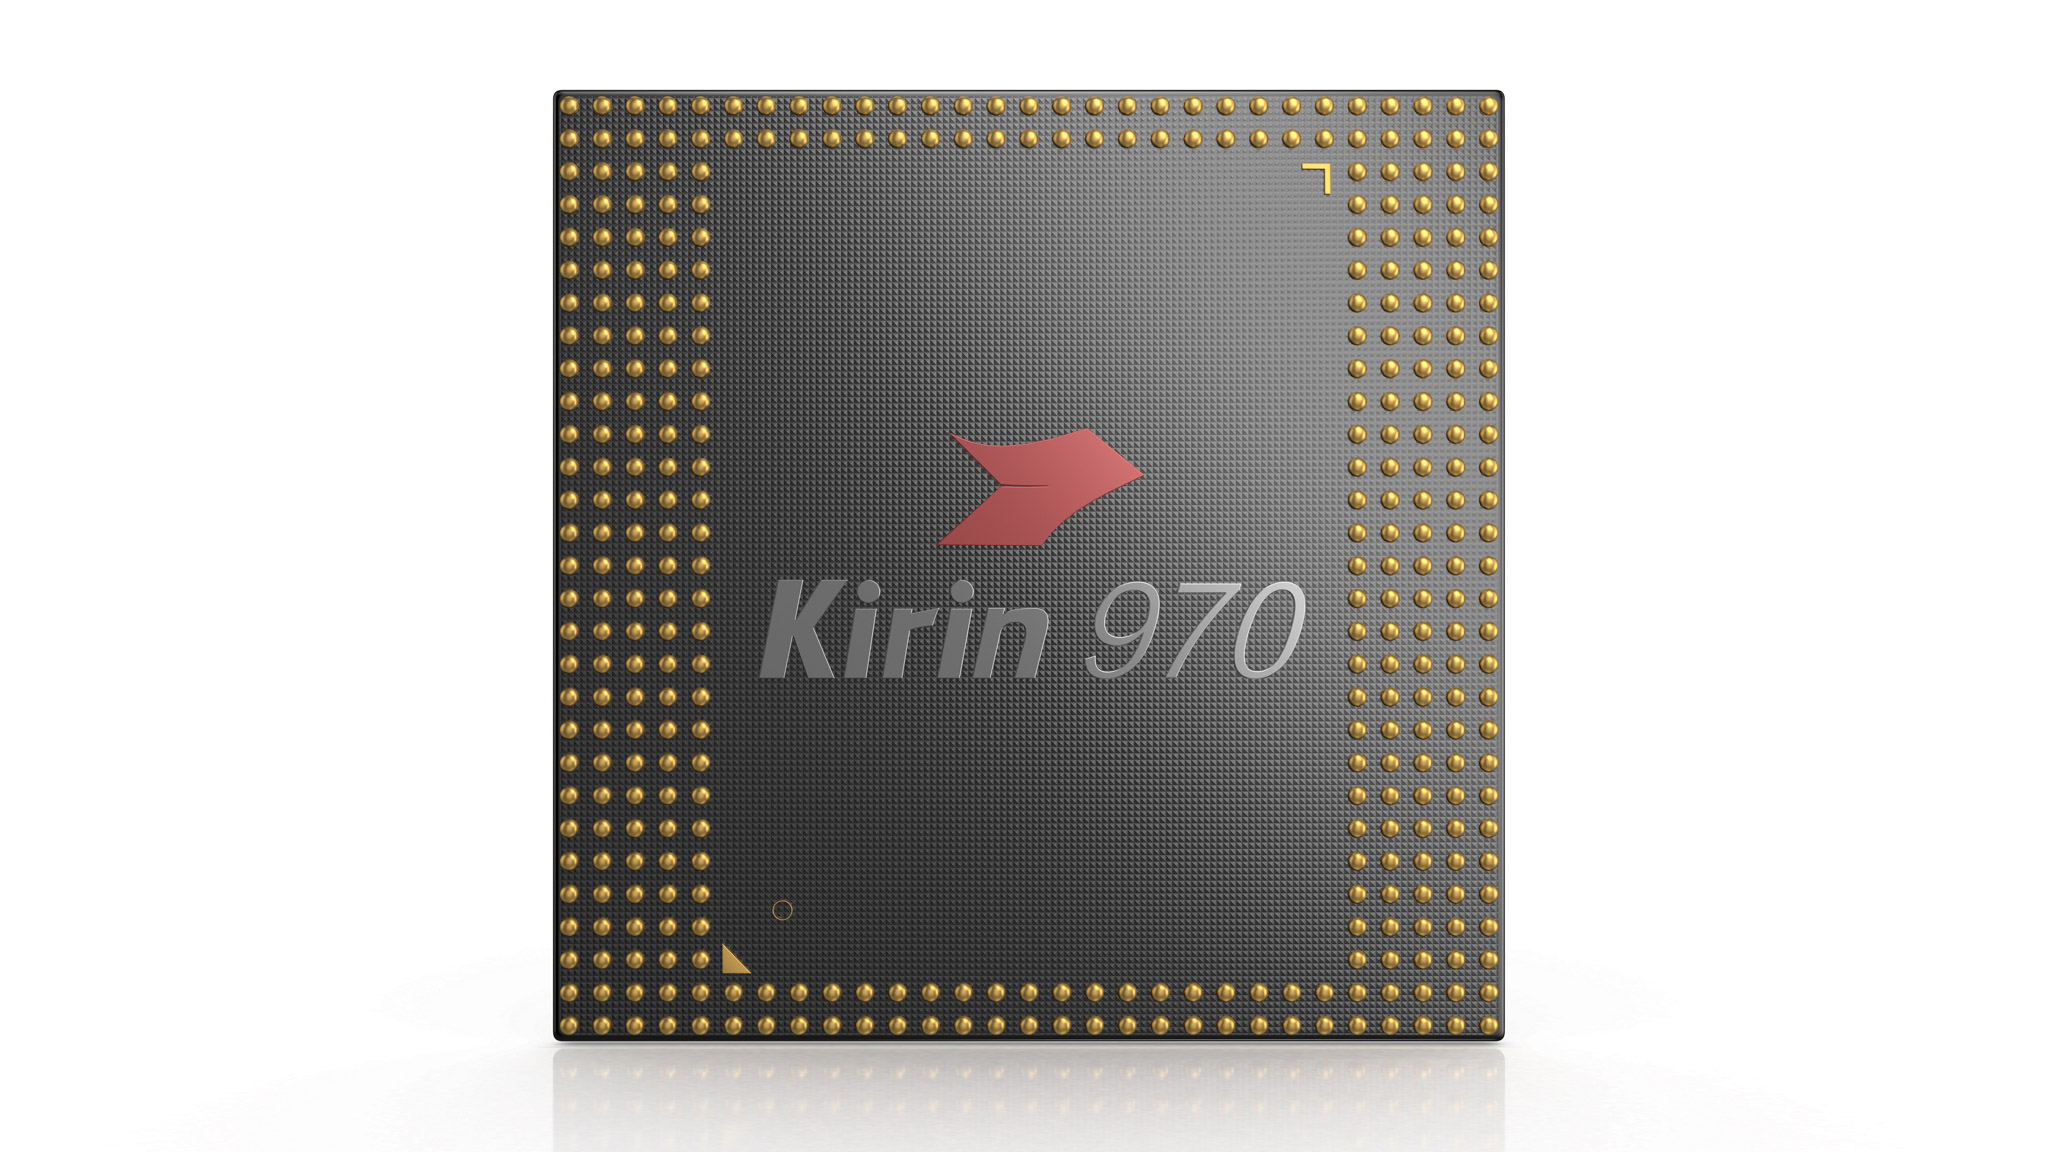 Huawei ra mắt chip Kirin 970, tương lai của Trí tuệ nhân tạo Di động